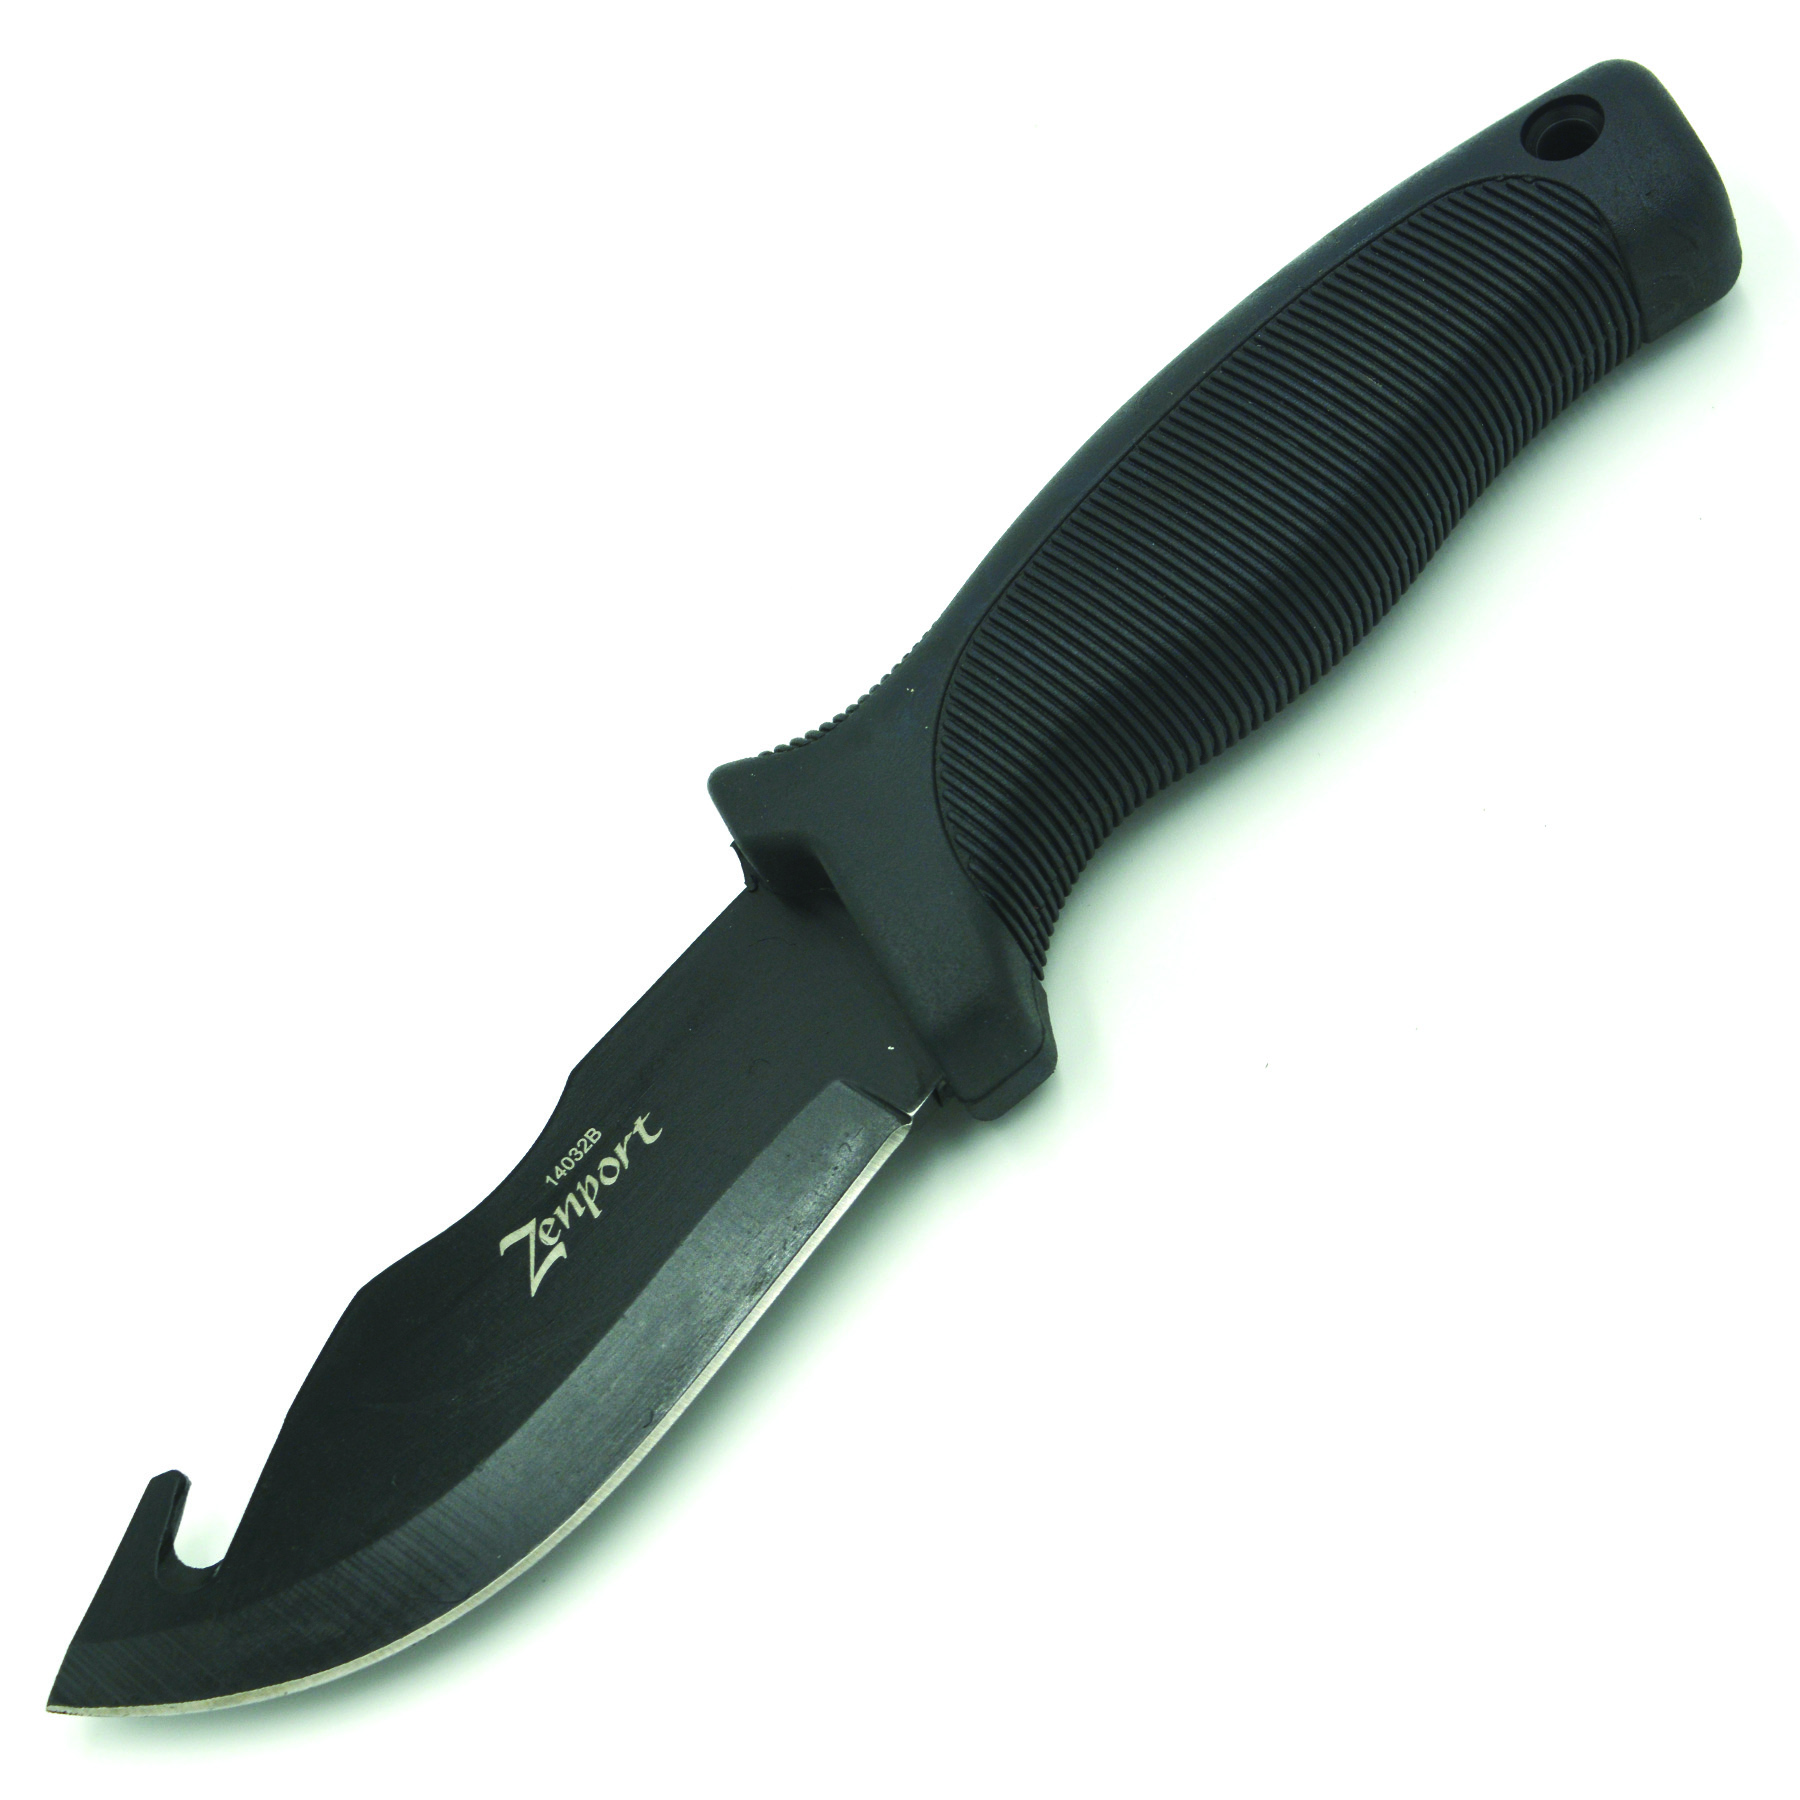 Zenport Skinner Knife 14032B 4.2-Inch 440C Stainless Steel Blade, Gut Hook, Sheath, 9-Inch Long